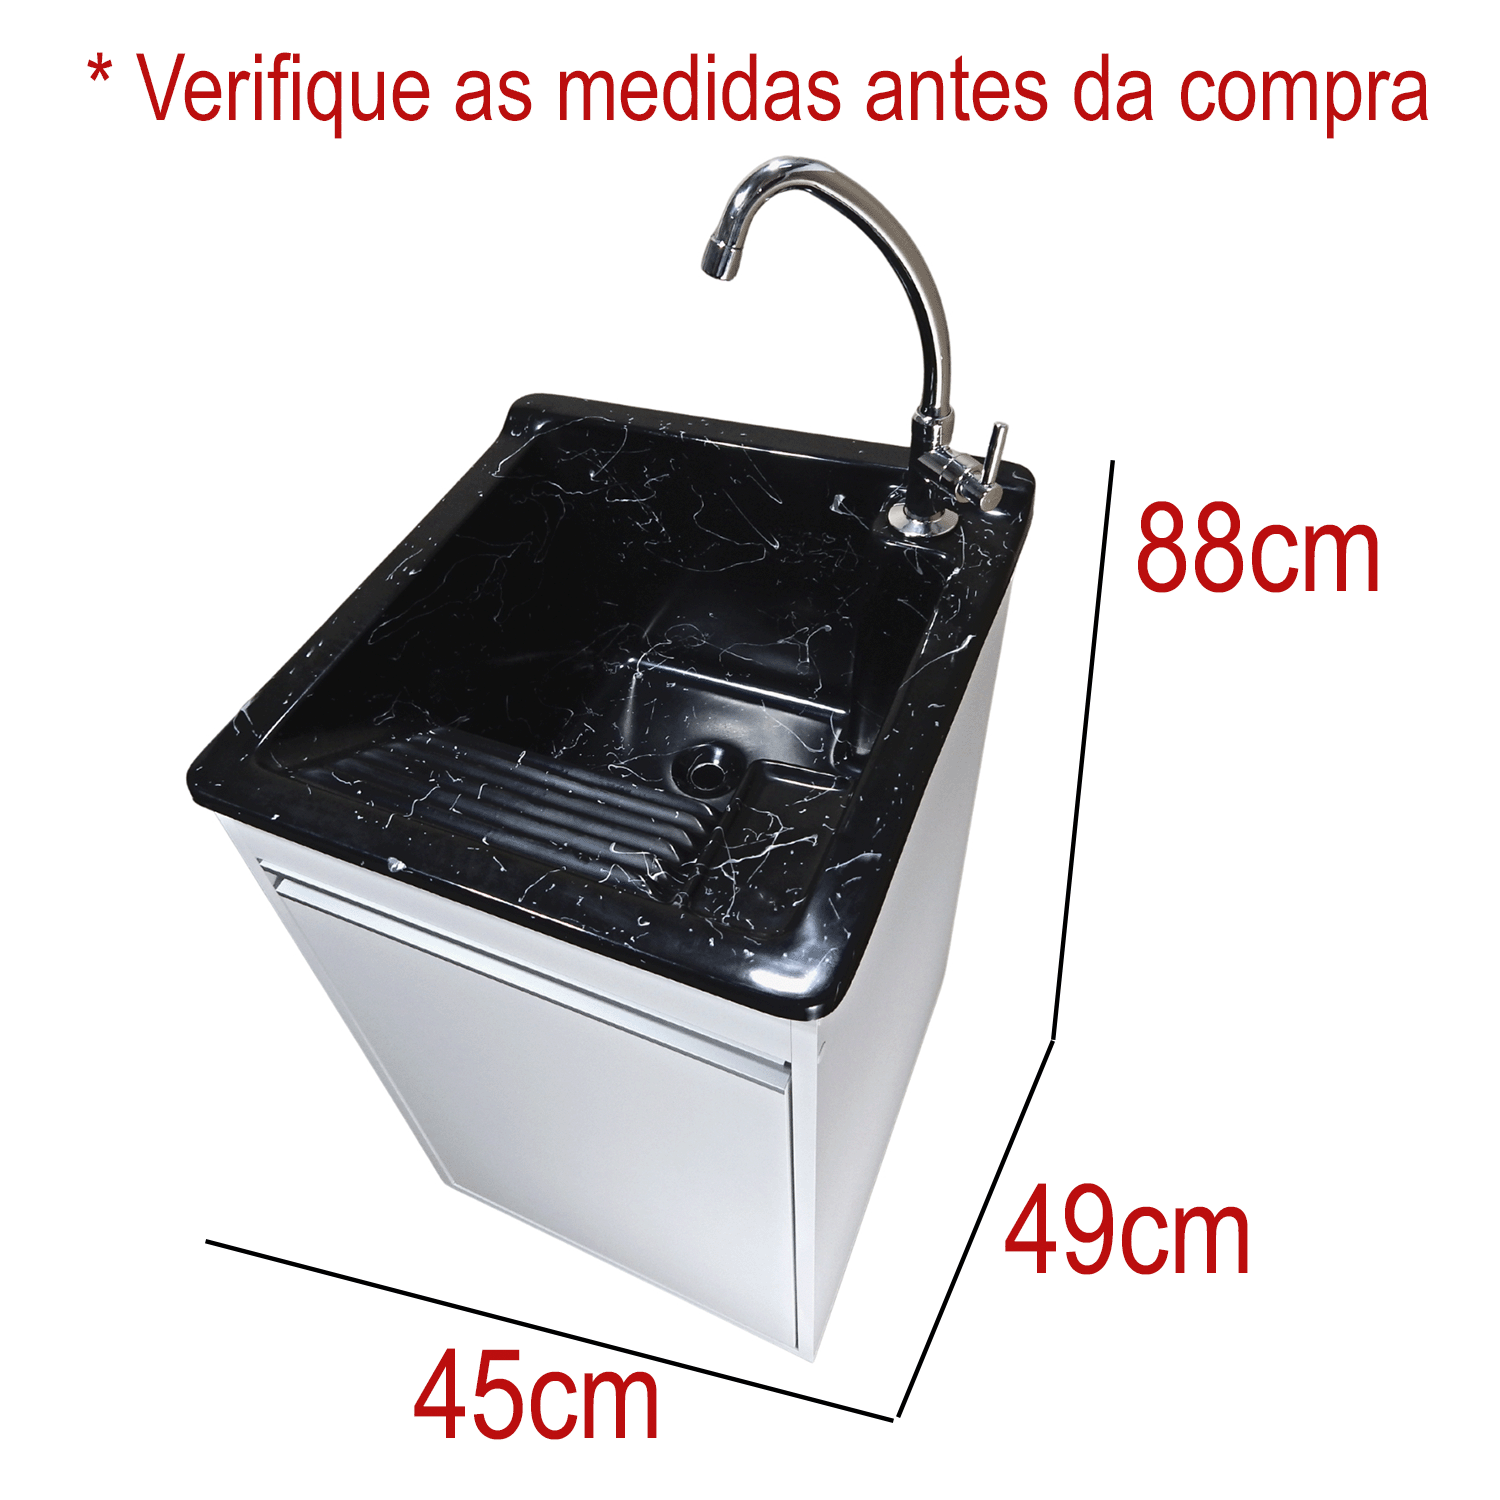 Tanque de Lavar Roupa com Torneira de Bancada + Gabinete Mdf Tanque:preto - 2